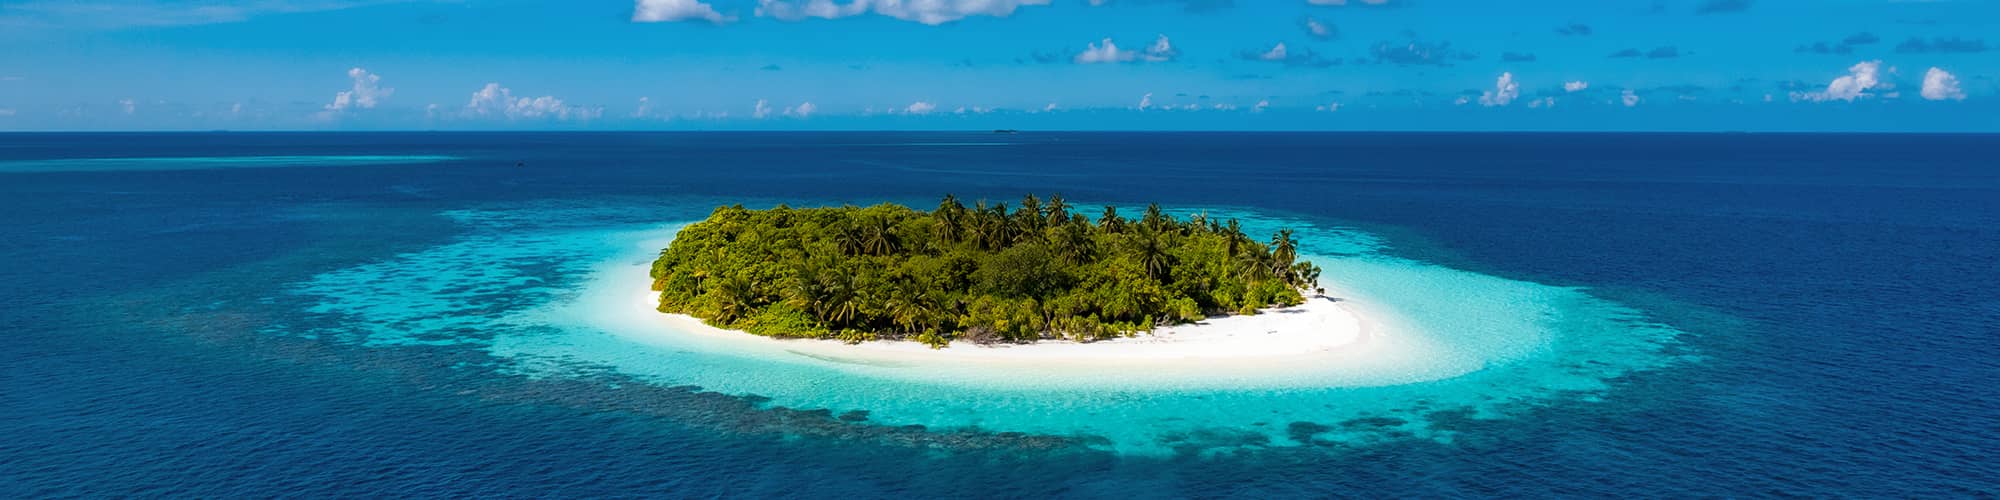 Voyage sur mesure Maldives © graphixel